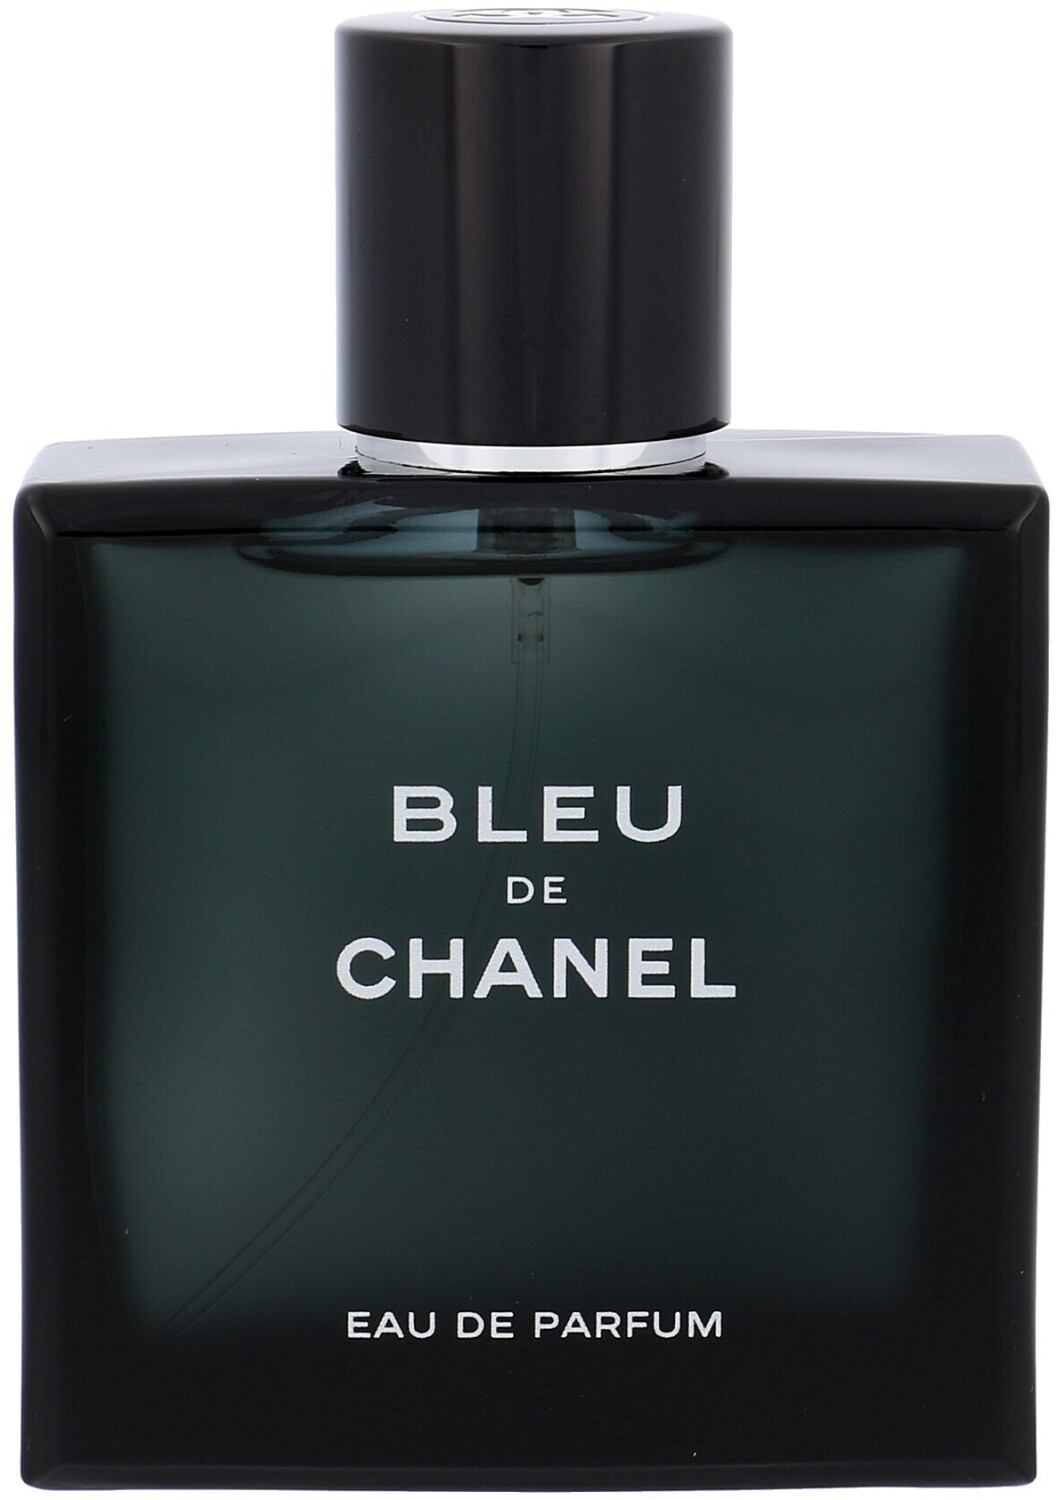 Chanel Bleu de Chanel Eau de Parfum 3 x 20 ml recharge : : Belleza